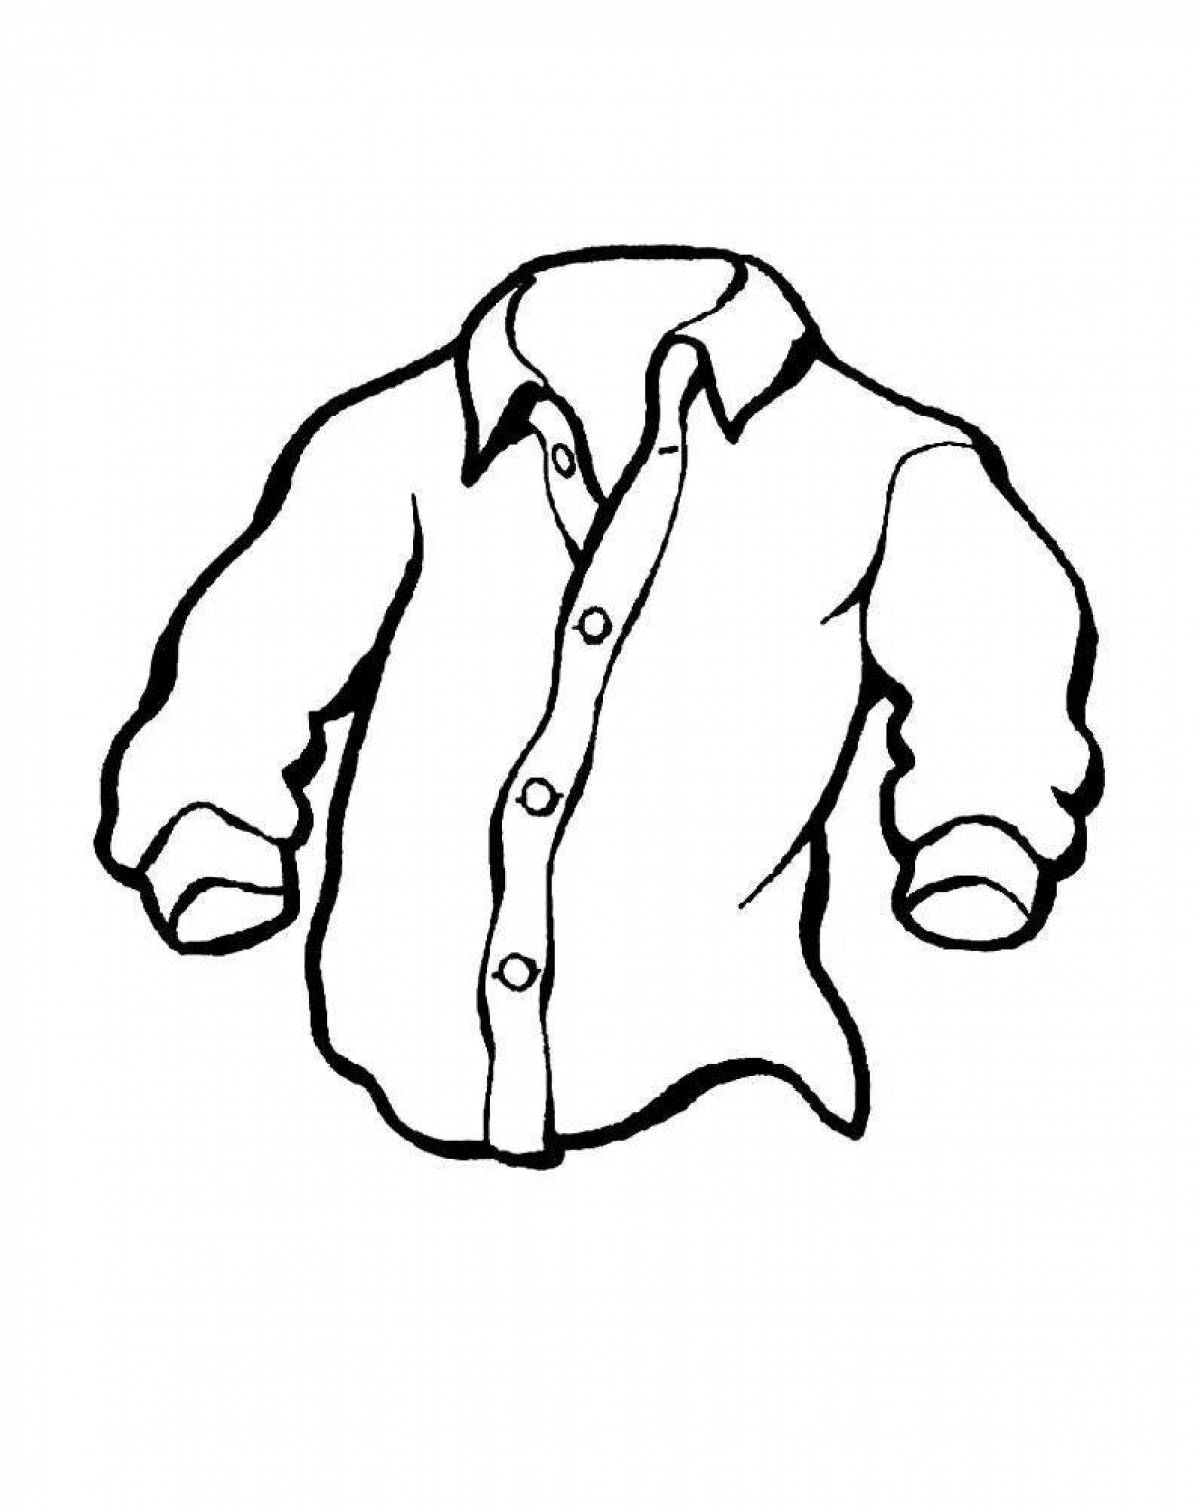 Яркая рубашка-раскраска для детей 4-5 лет